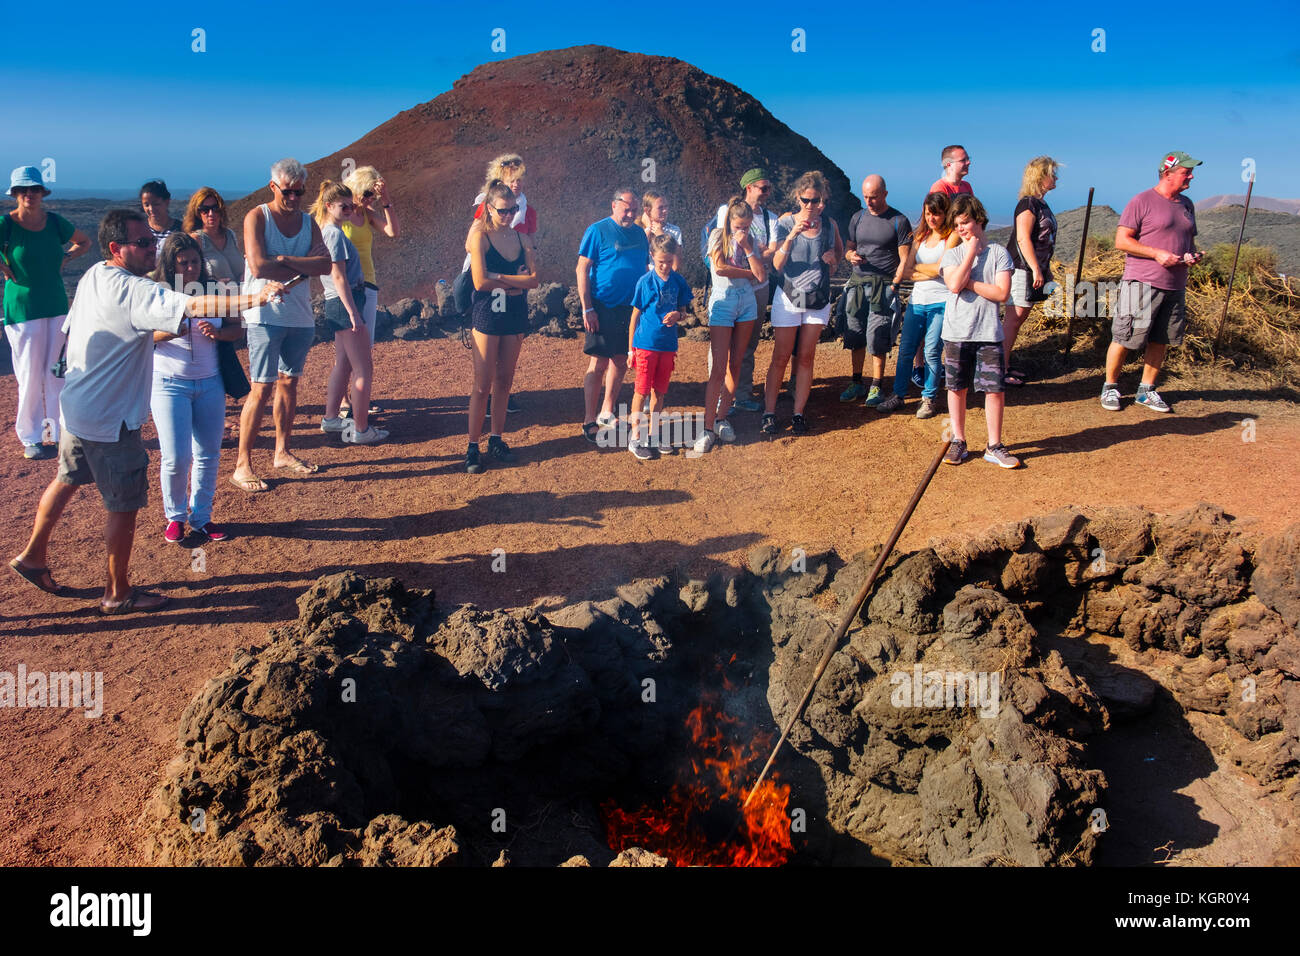 Demonstrationen vulkanischer Aktivität auf der Insel Hilario. Timanfaya Nationalpark. Lanzarote Island. Kanarische Inseln Spanien. Europa Stockfoto